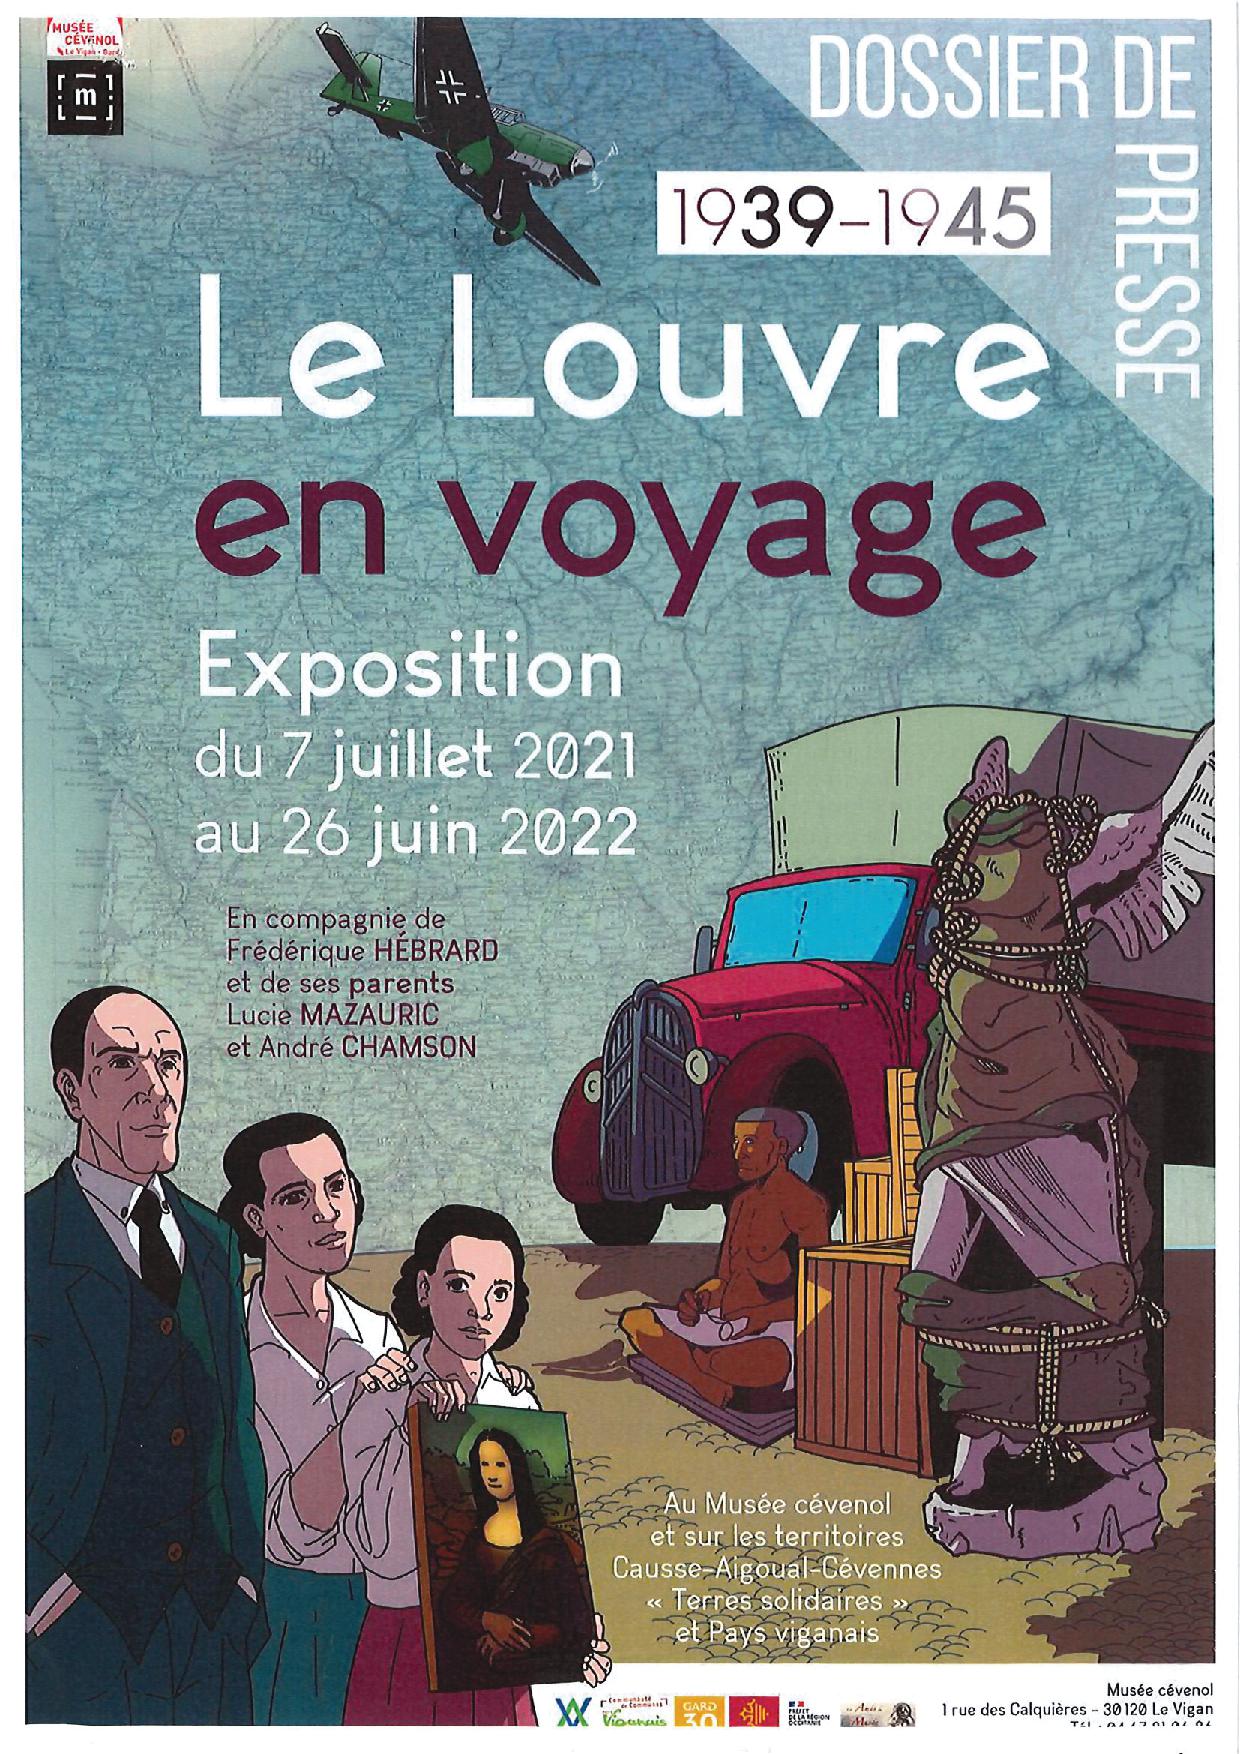 Le Louvre en voyage 1939-1945